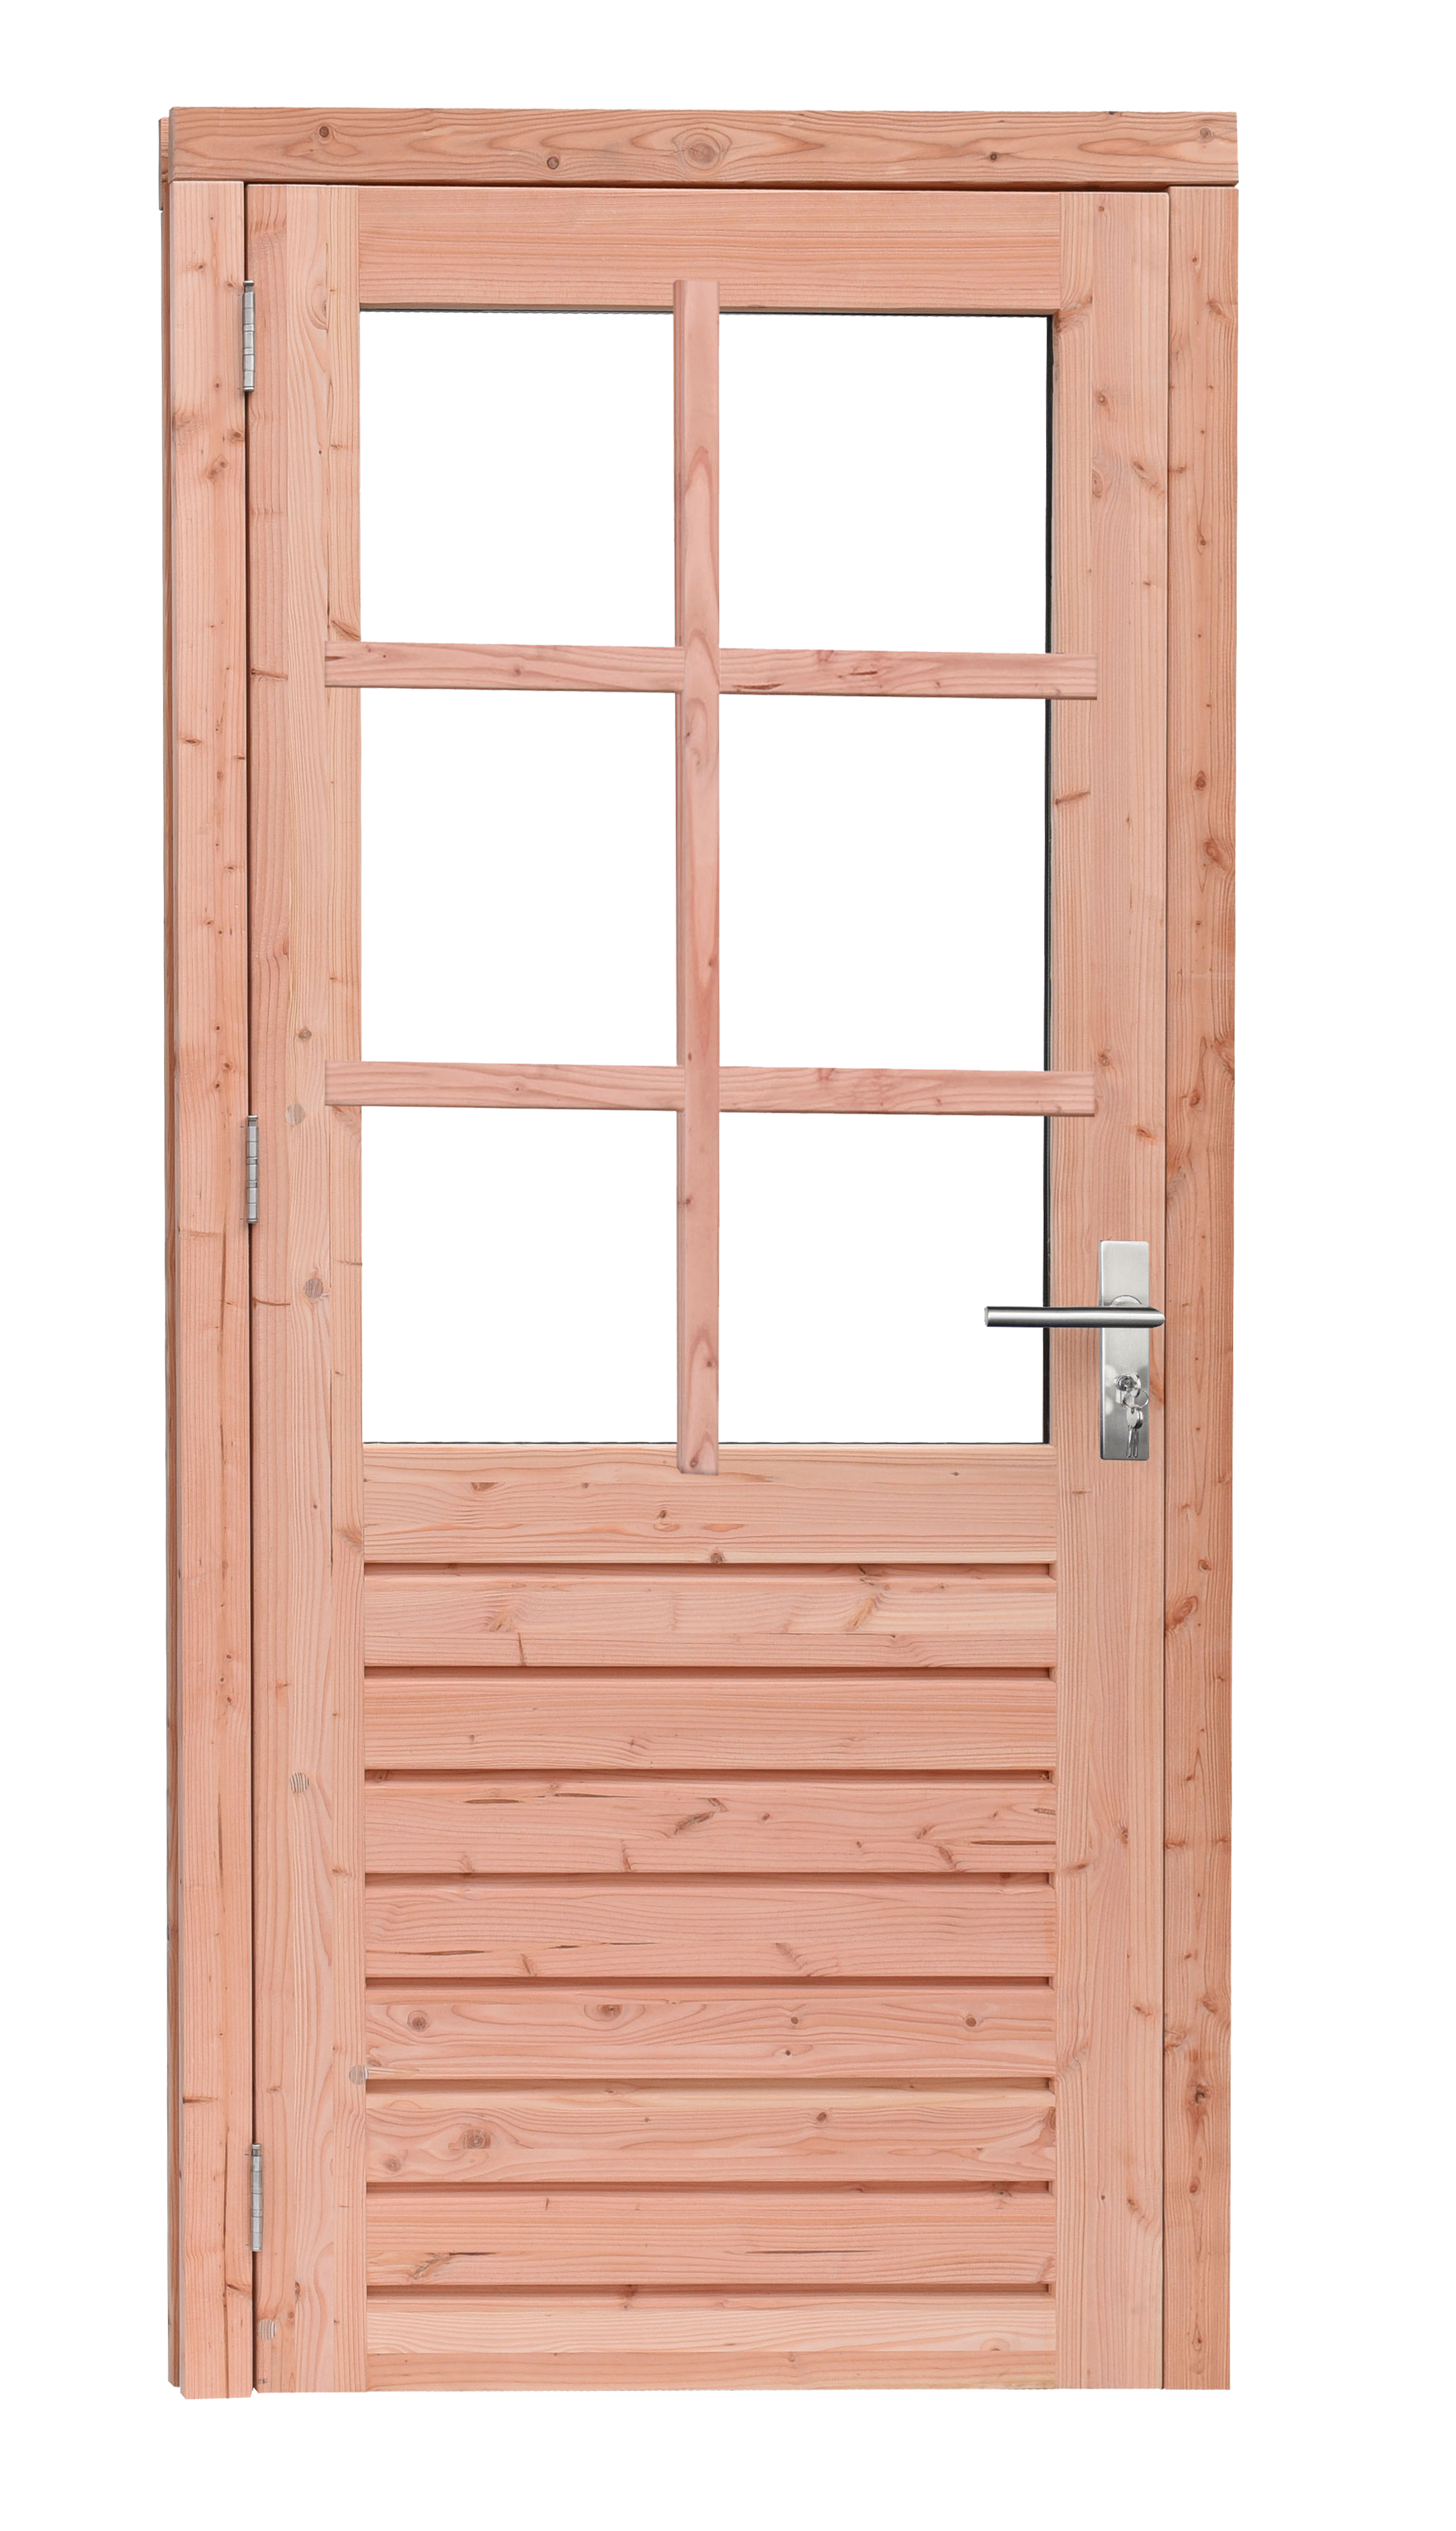 Woodvision | Douglas enkele deur Prestige | 6-ruits | 109 x 221 cm | Linksdraaiend